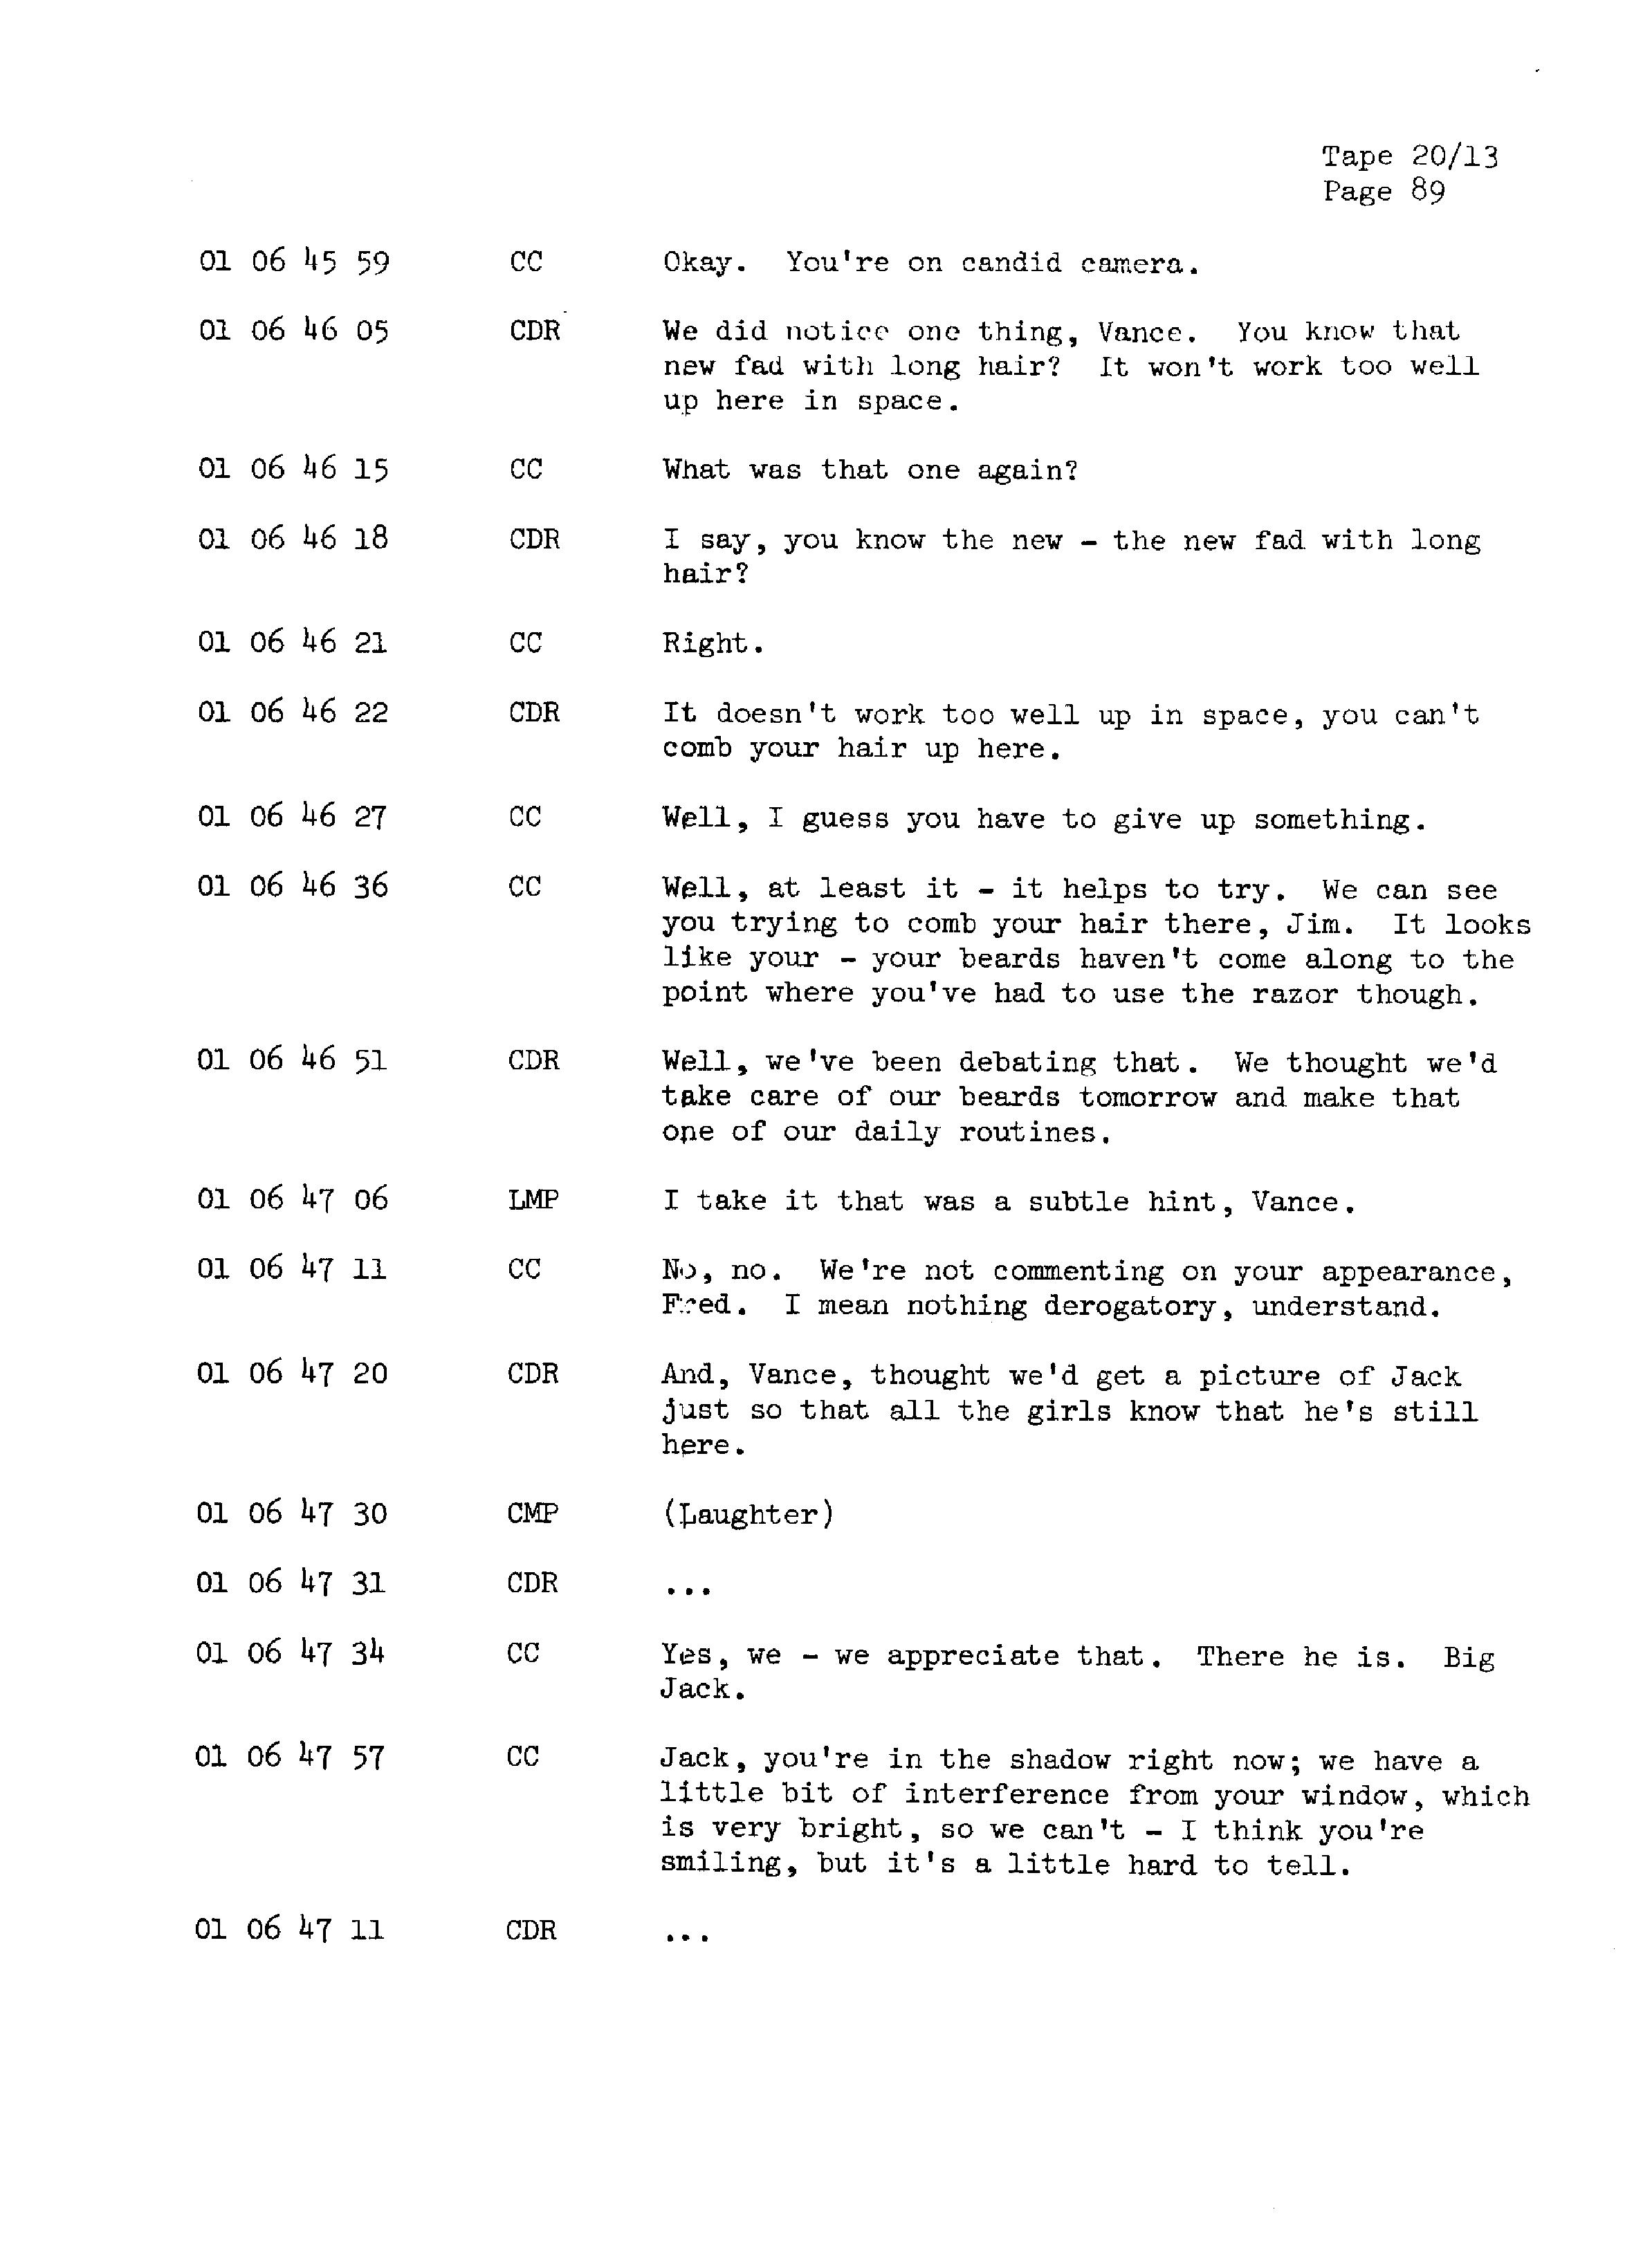 Page 96 of Apollo 13’s original transcript